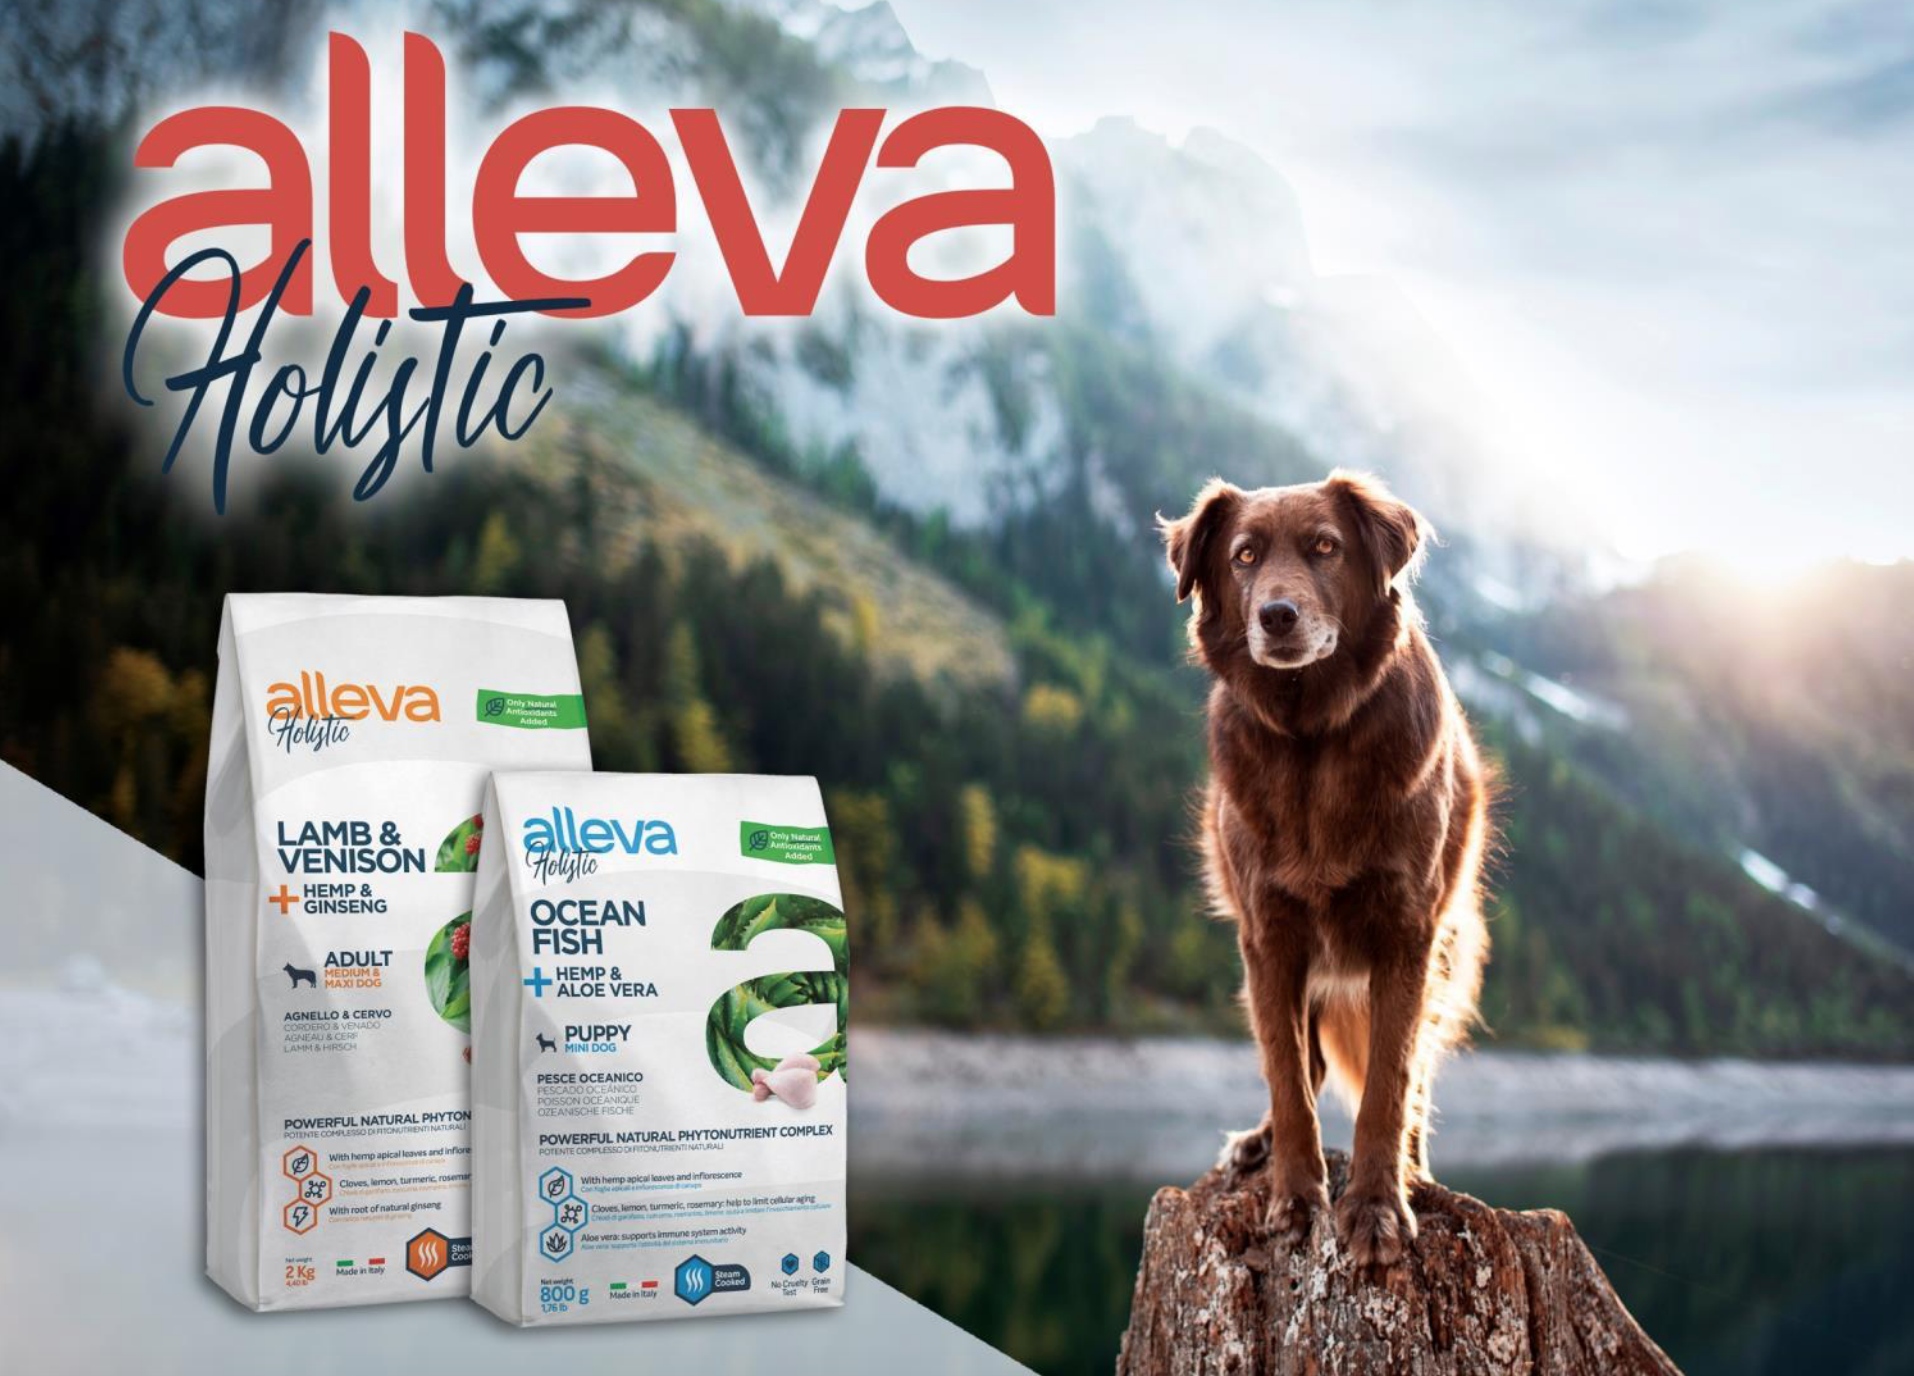 купить Сухой корм Alleva Holistic для собак (Италия) с бесплатной доставкой в Калининграде